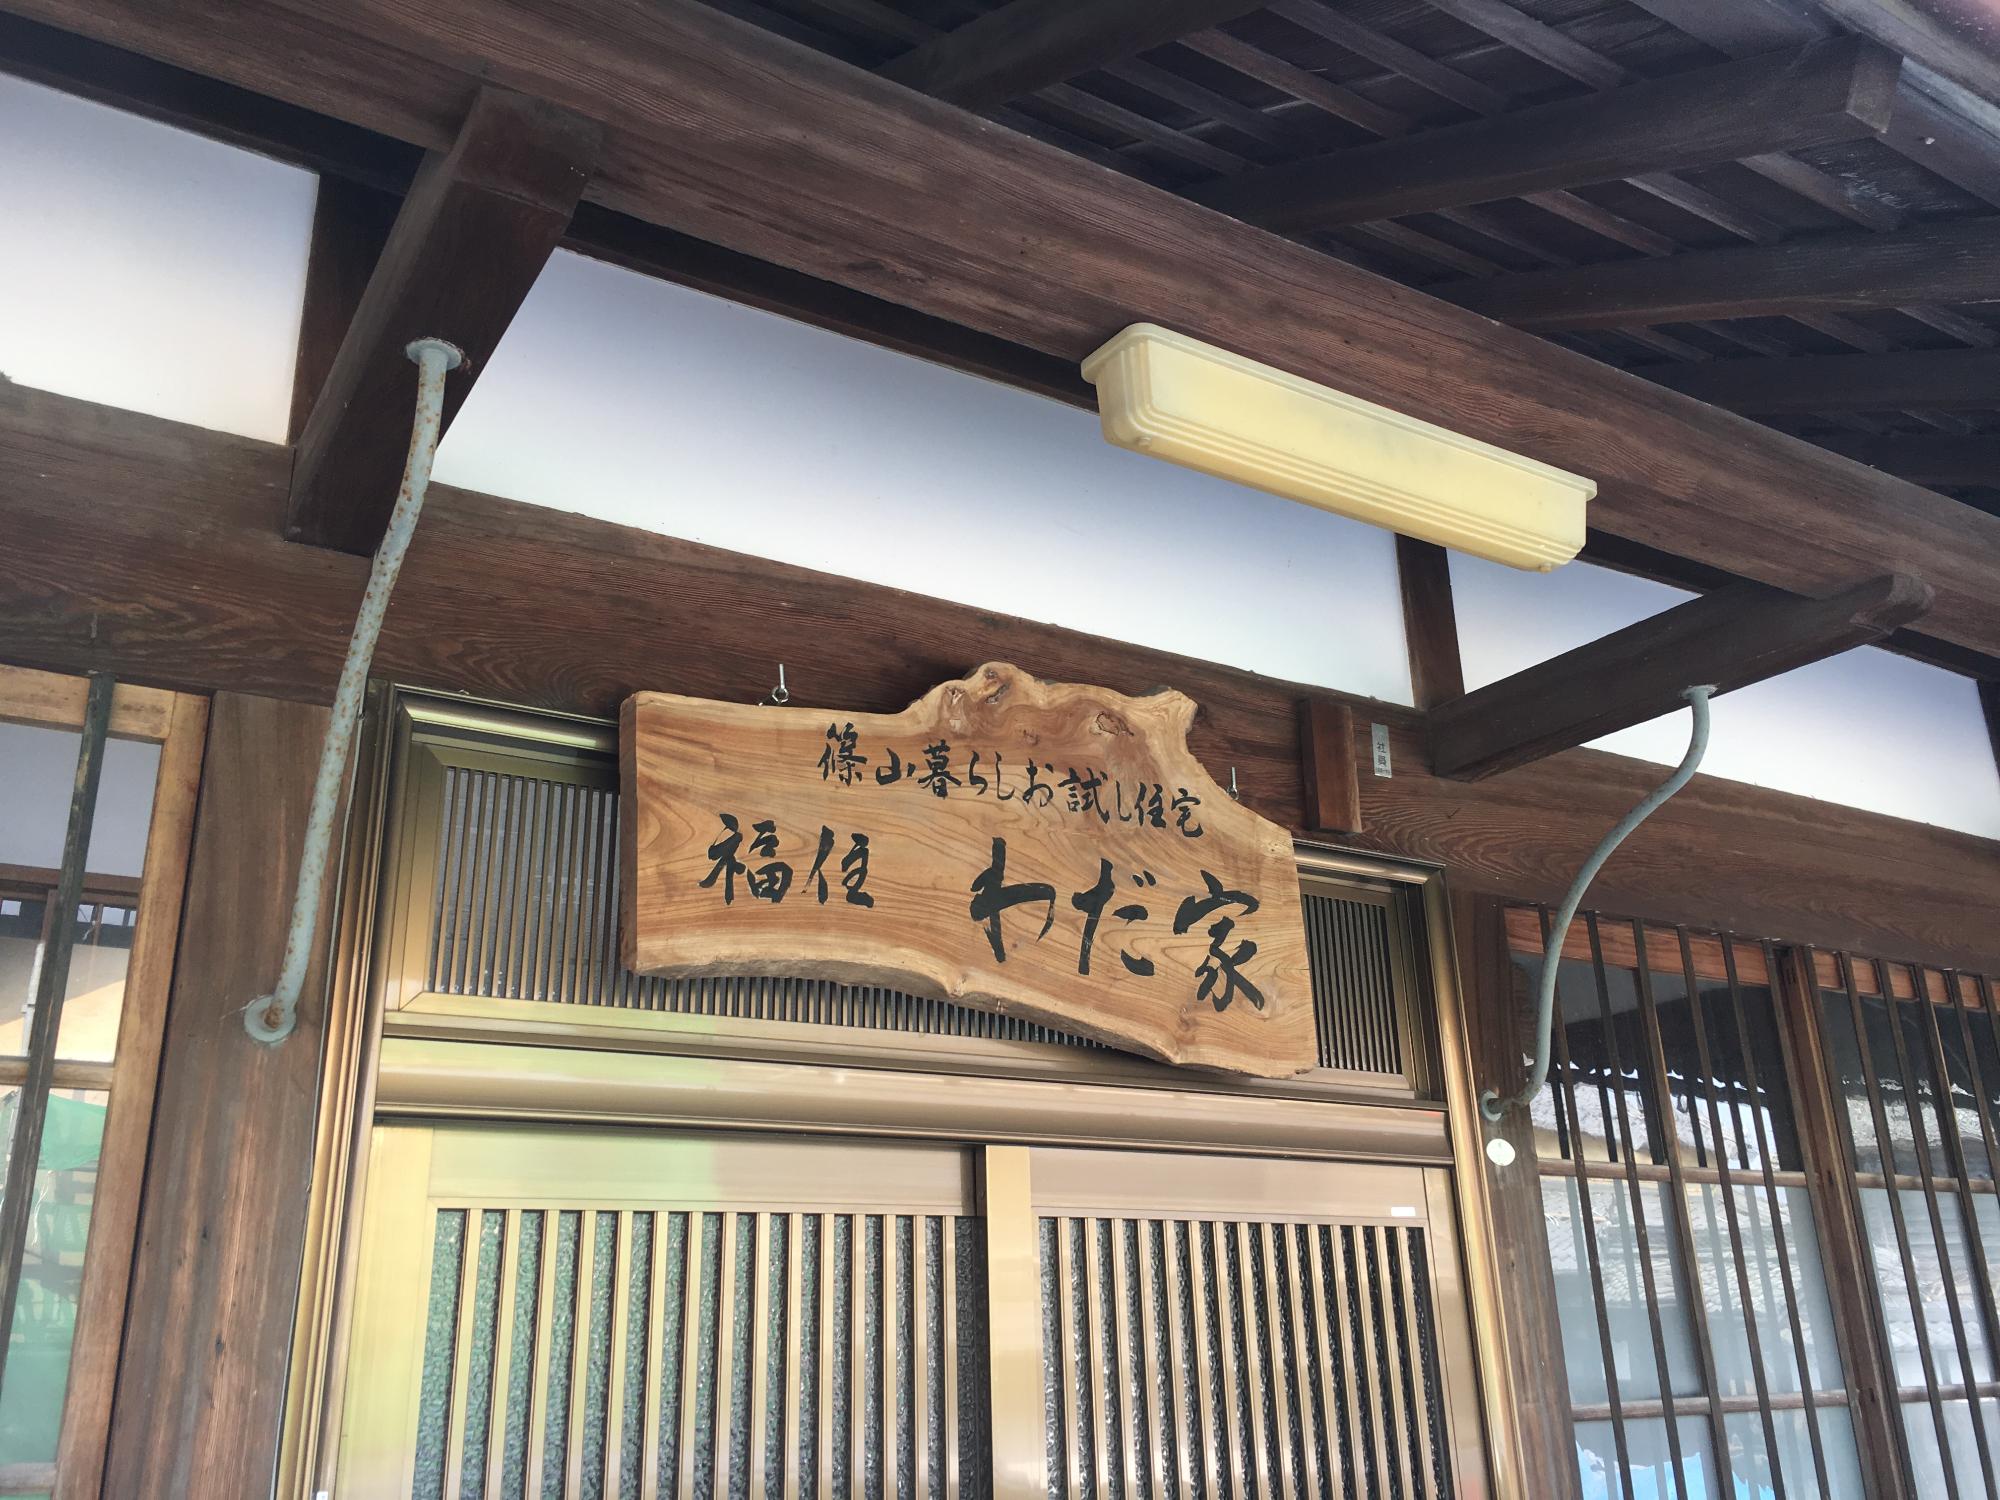 古民家住宅の玄関写真、看板には「篠山暮らしお試し住宅 福住わだ家」と書かれている